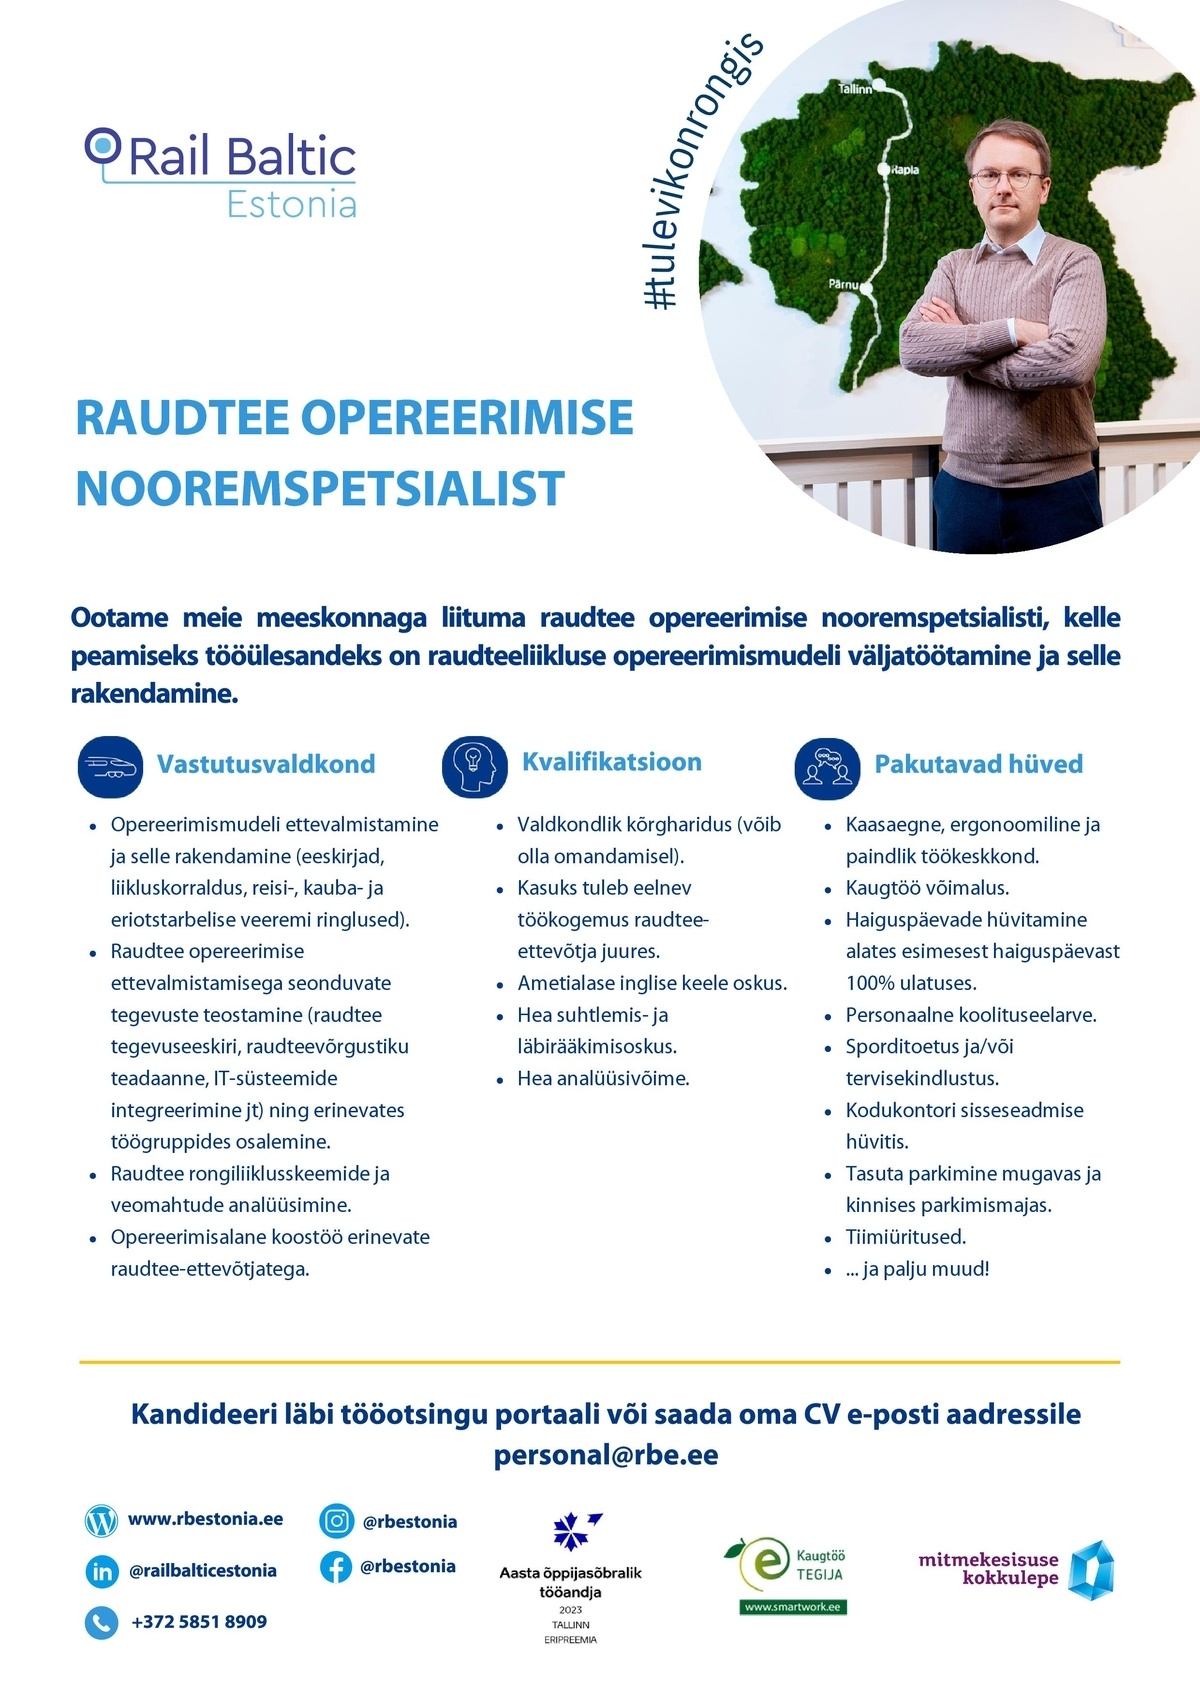 RAIL BALTIC ESTONIA OÜ RAUDTEE OPEREERIMISE NOOREMSPETSIALIST